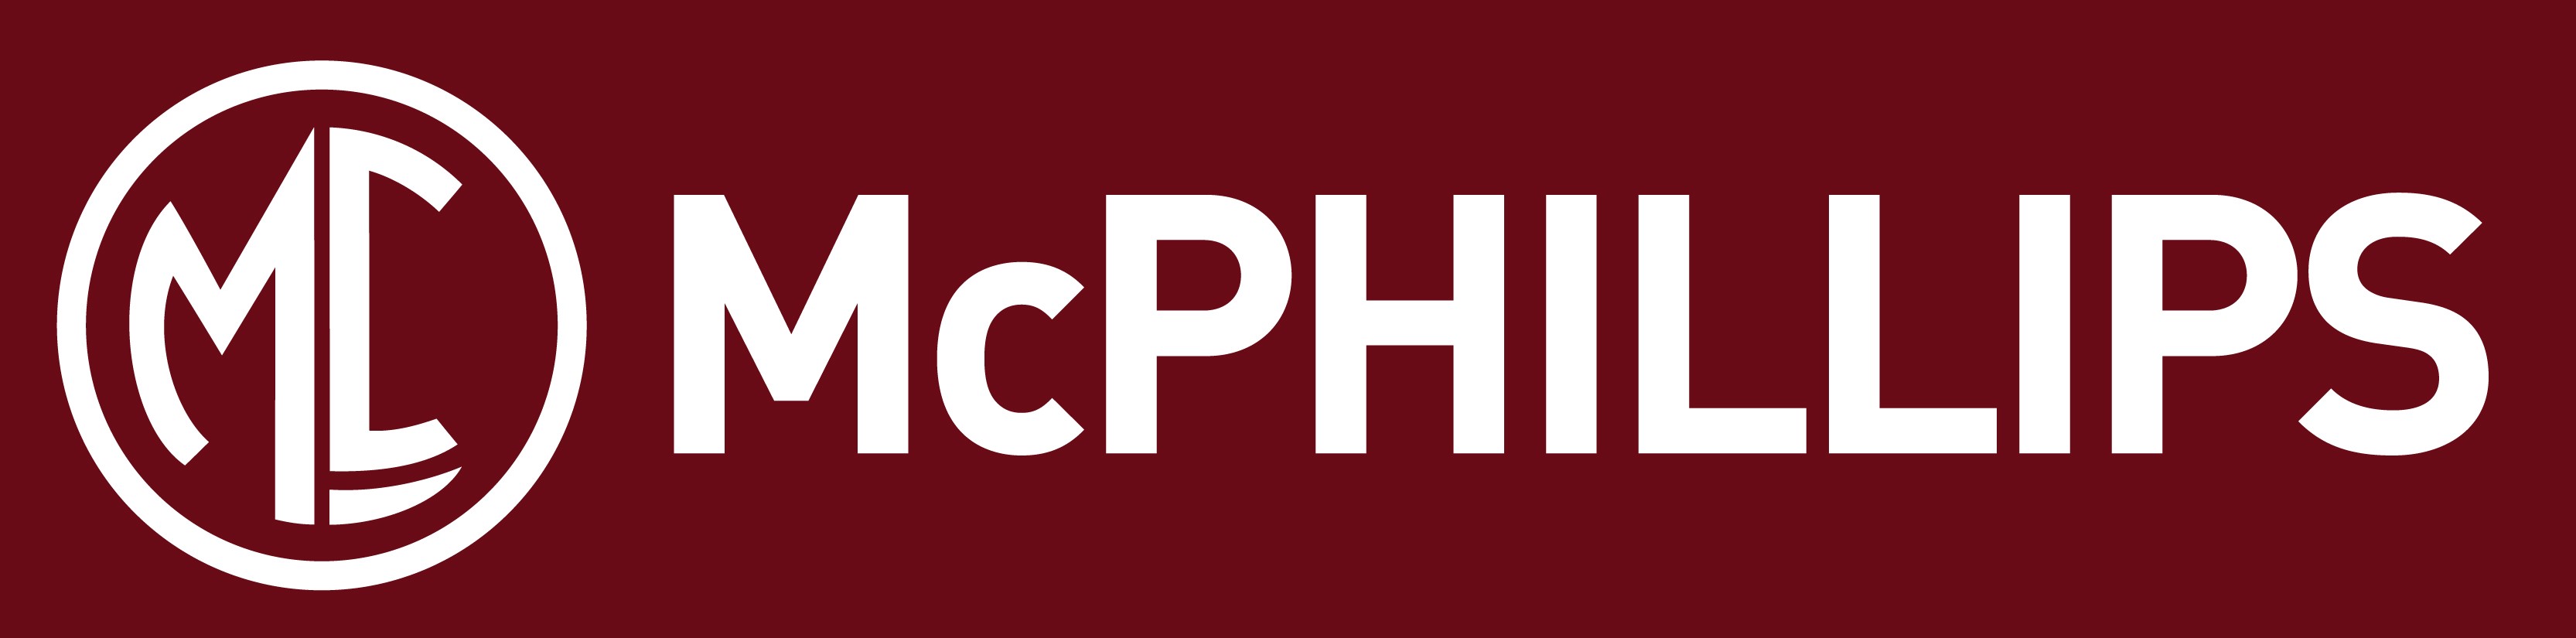 McPhiilips Logo 2017